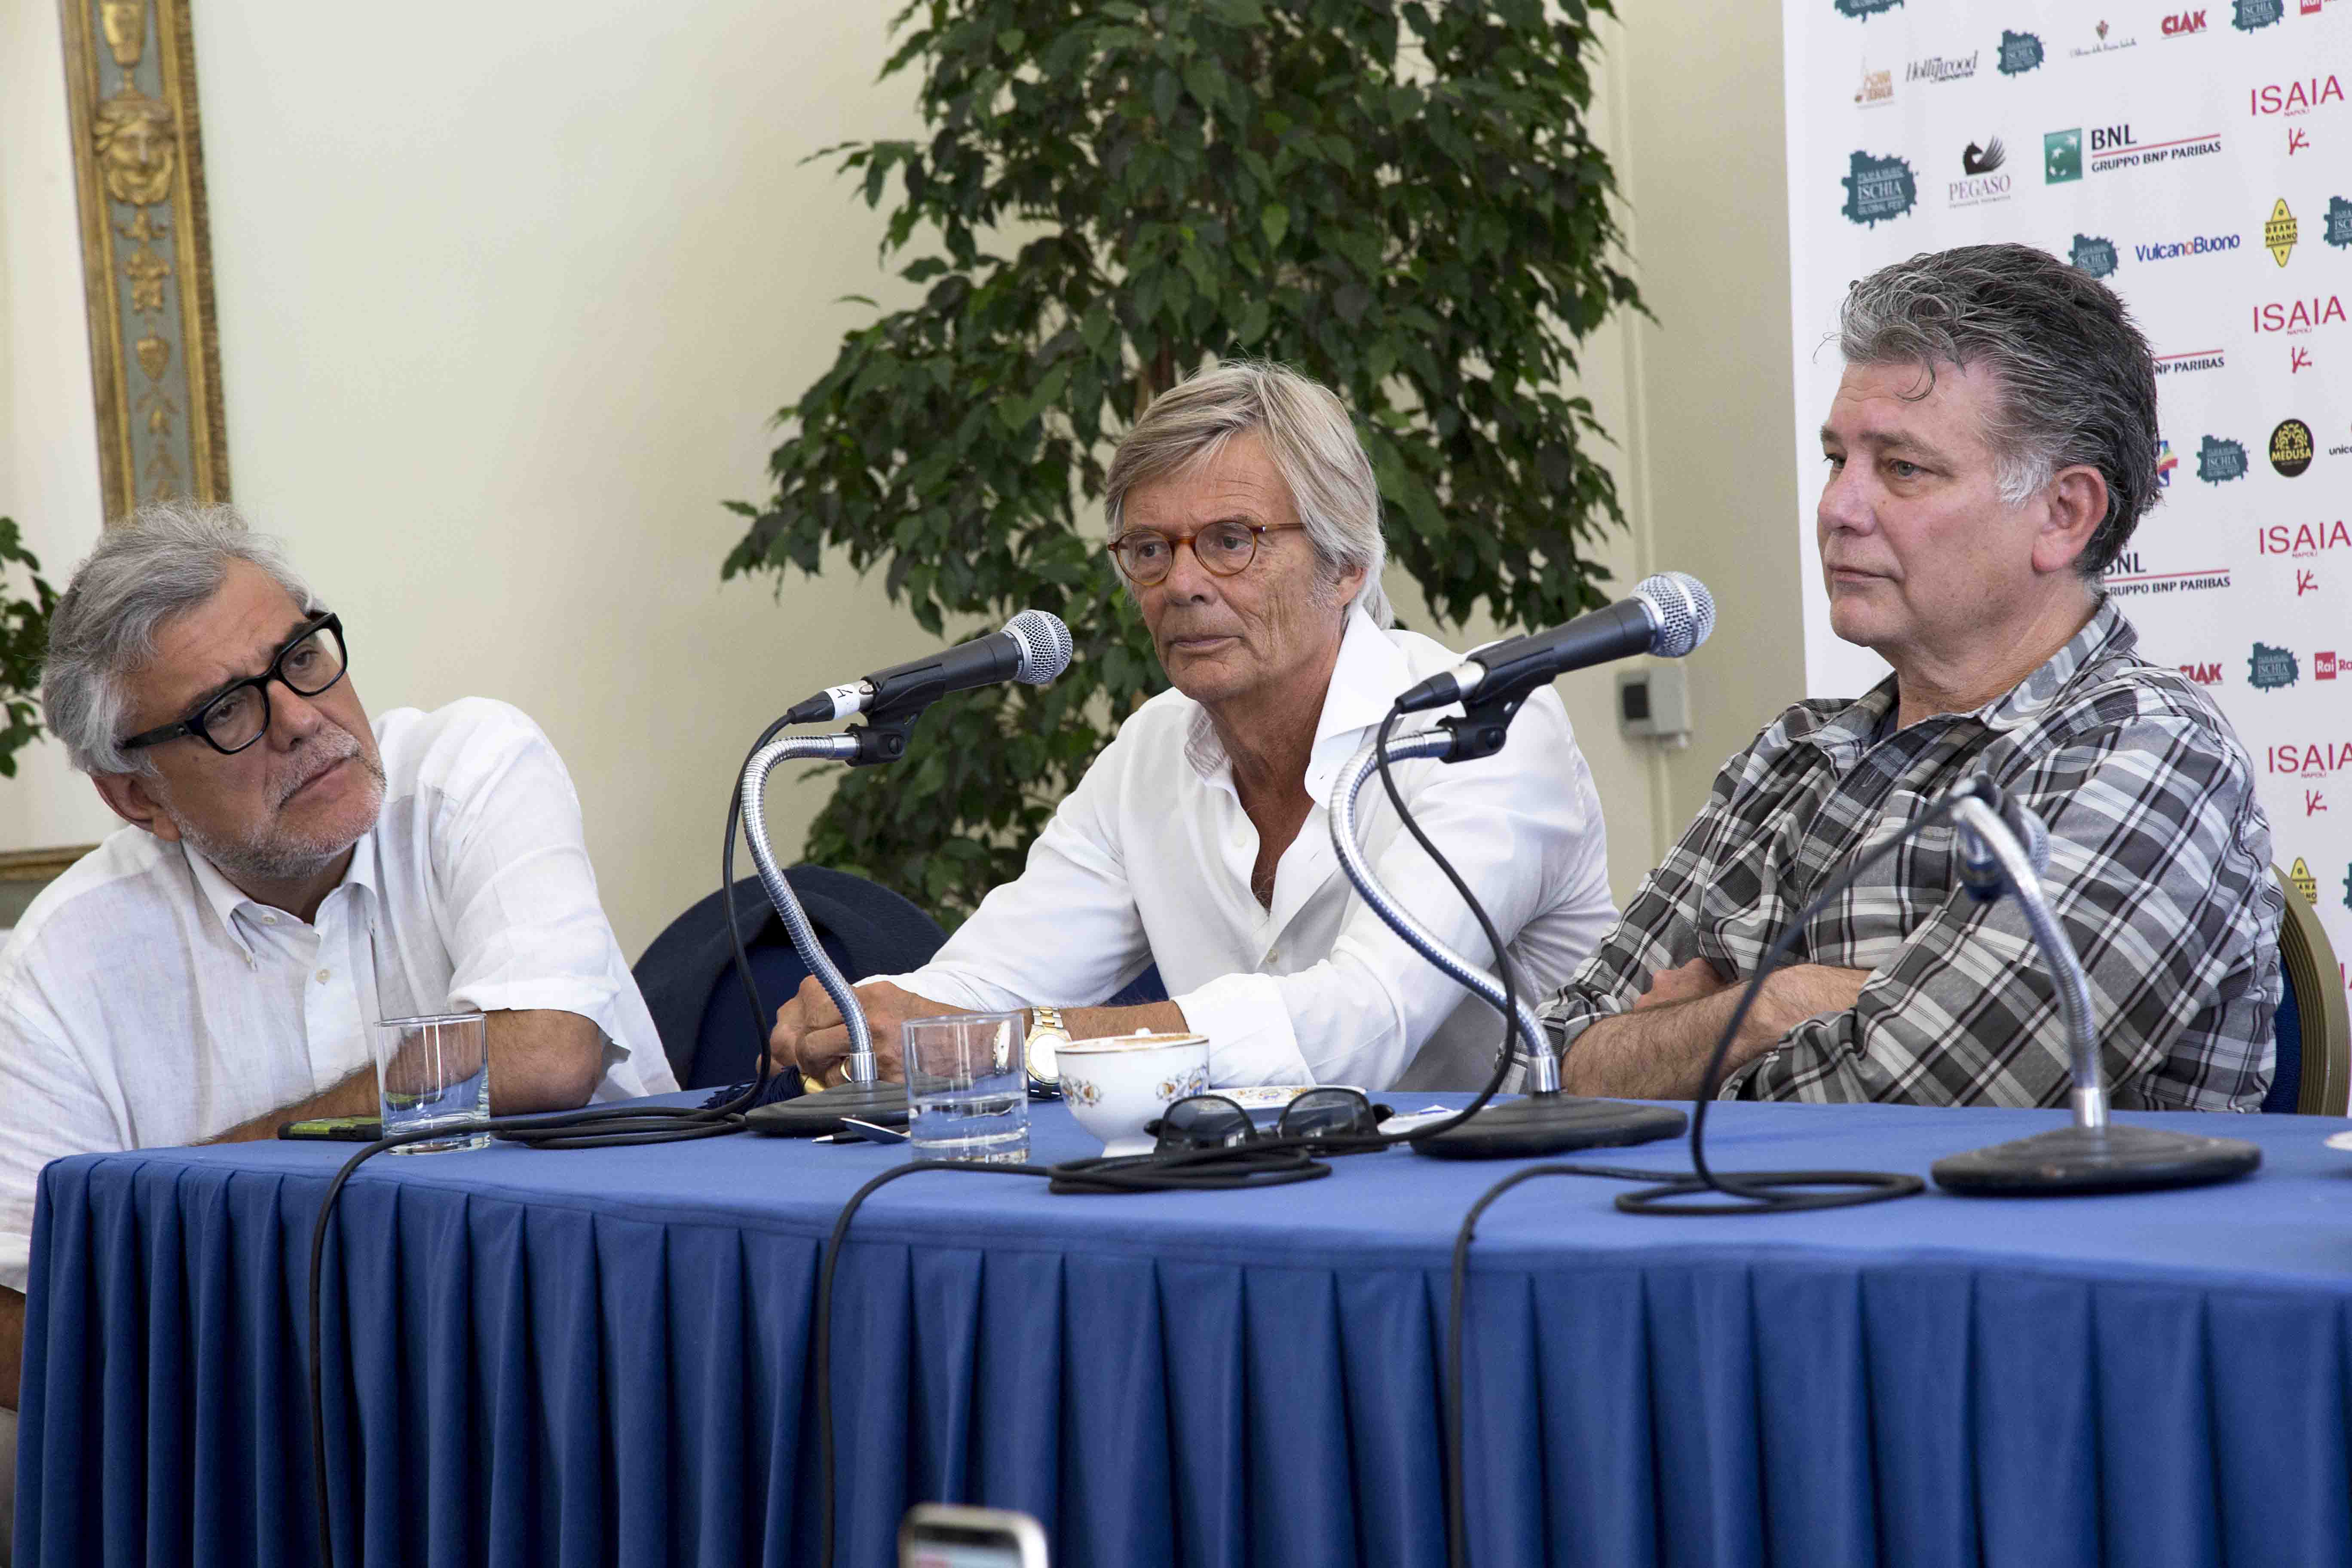 Ischia Global Fest - World Script Market - De Cataldo, Zaillian e August  - conferenza stampa del 17 Luglio